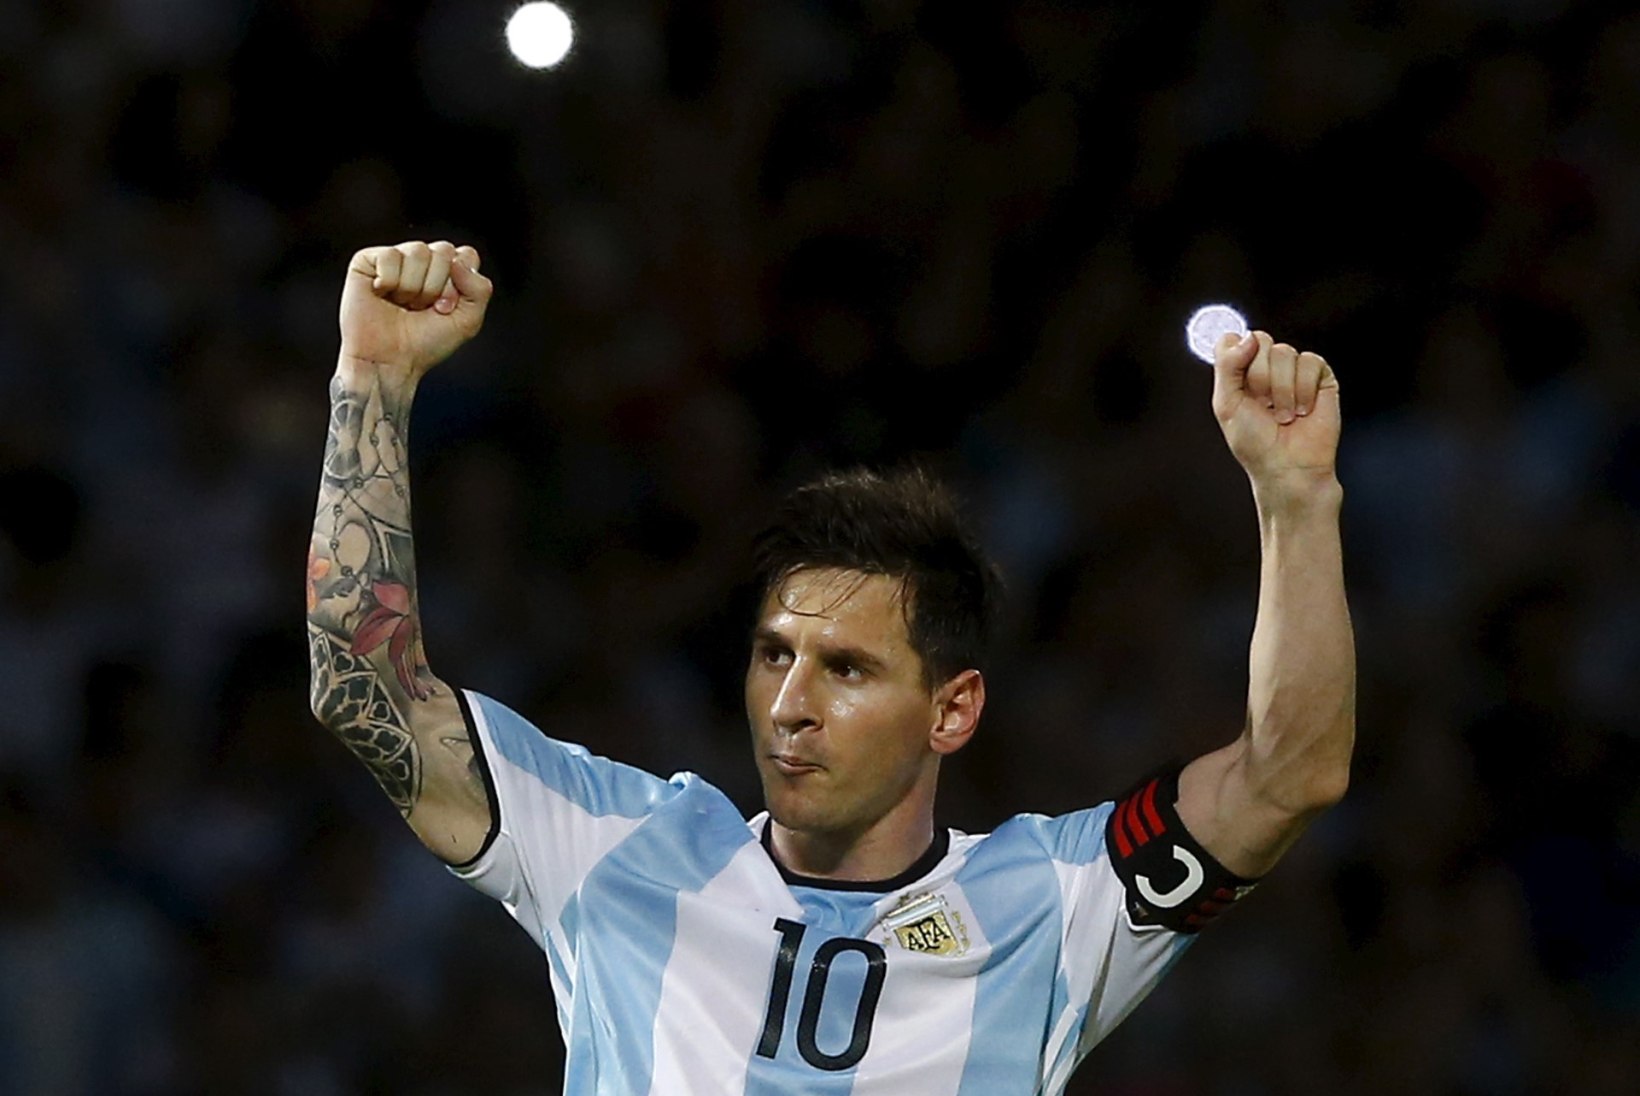 12 fakti 500. värava juubelit tähistanud Lionel Messi kollide kohta